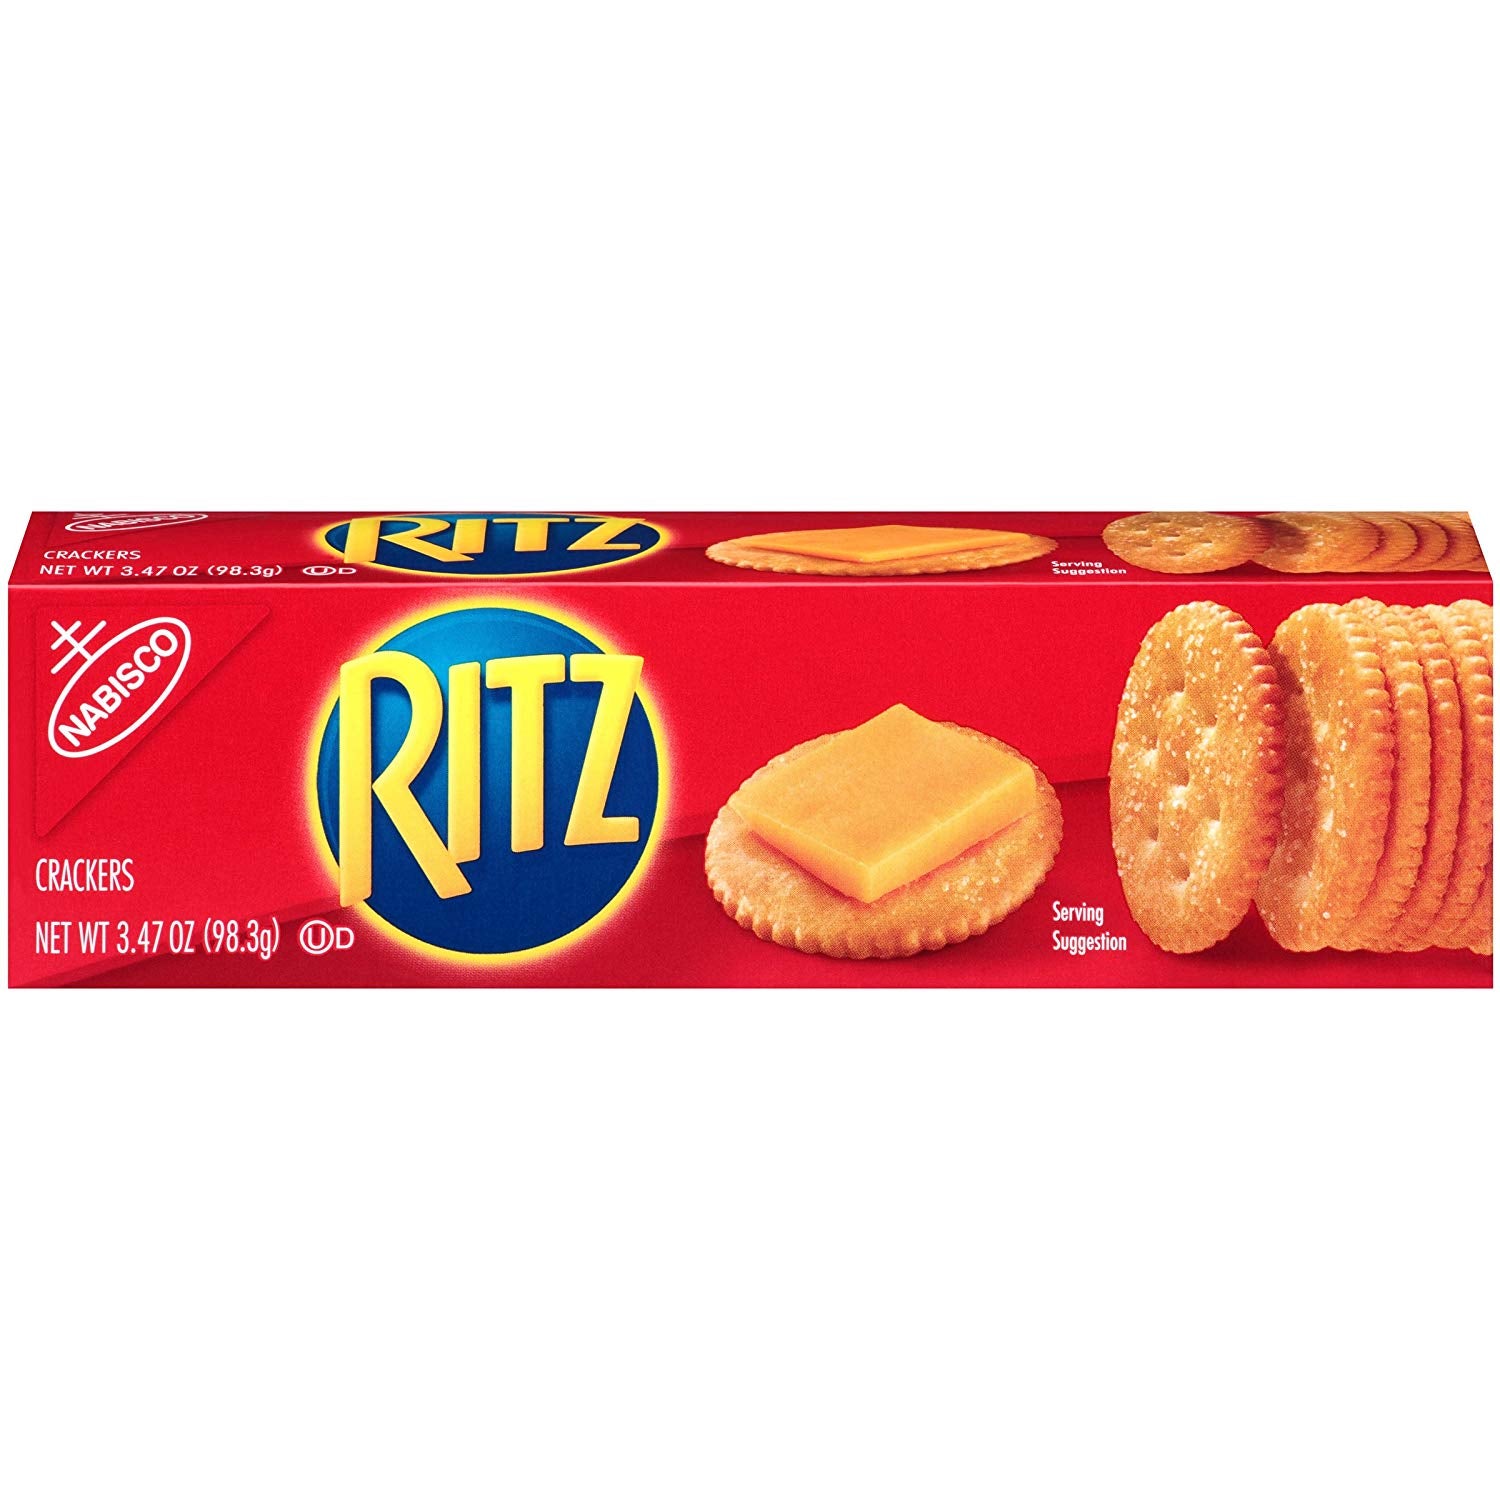 stl>Ritz Crackers - 3.47oz